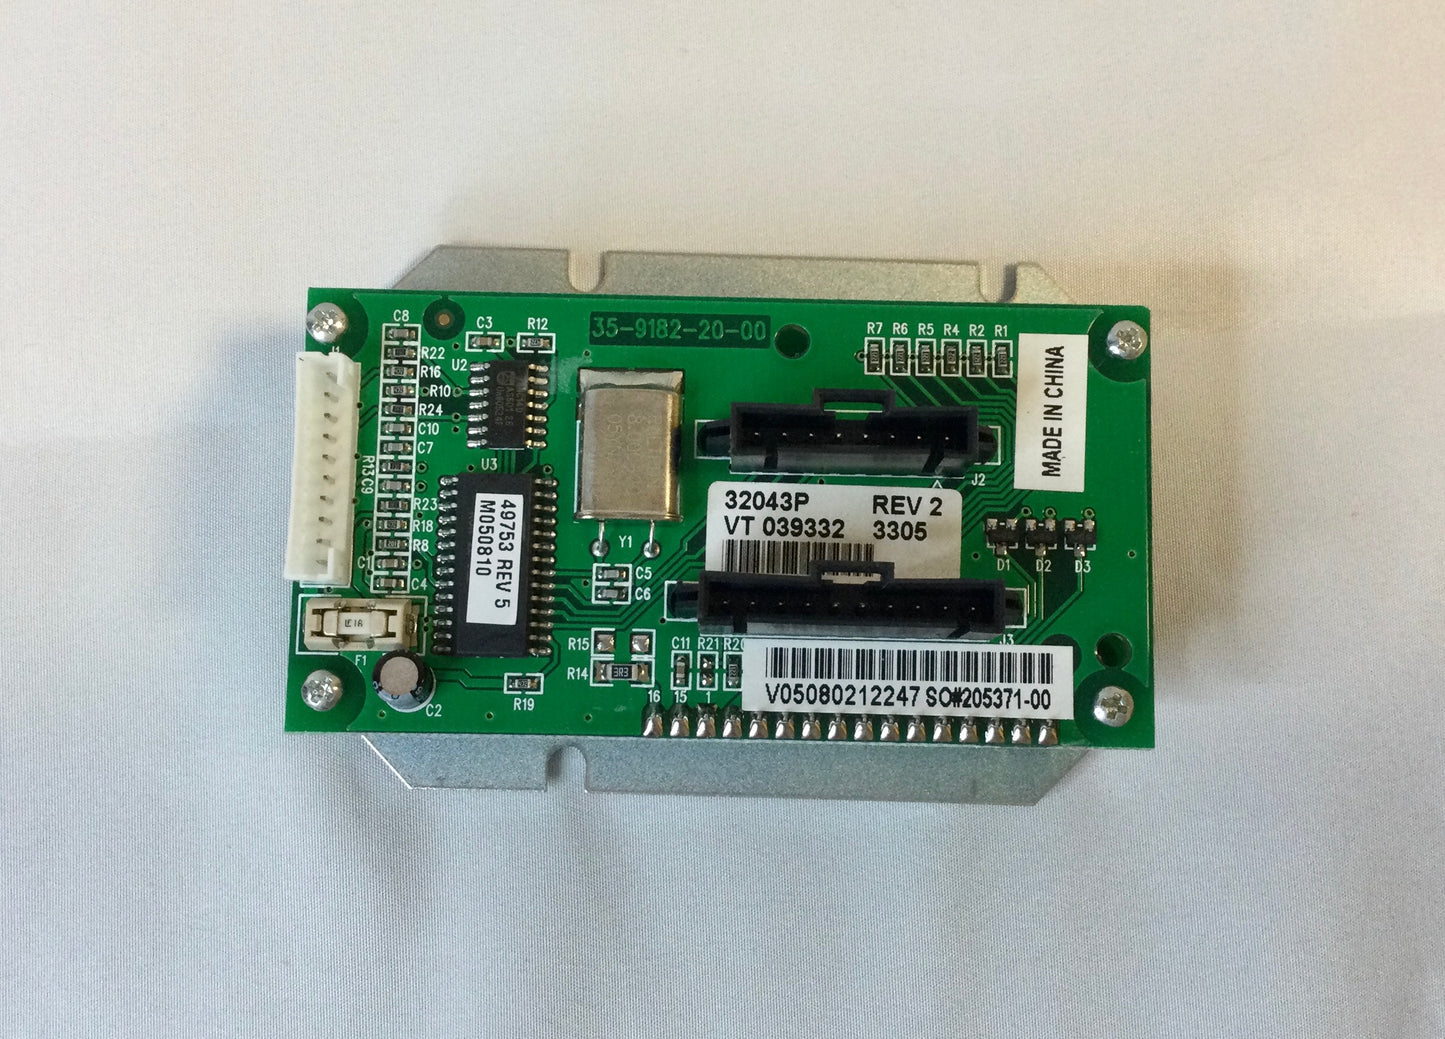 ZEBRA XI SERIES PRINTER PN# G32043M FRONT DISPLAY LCD SCREEN